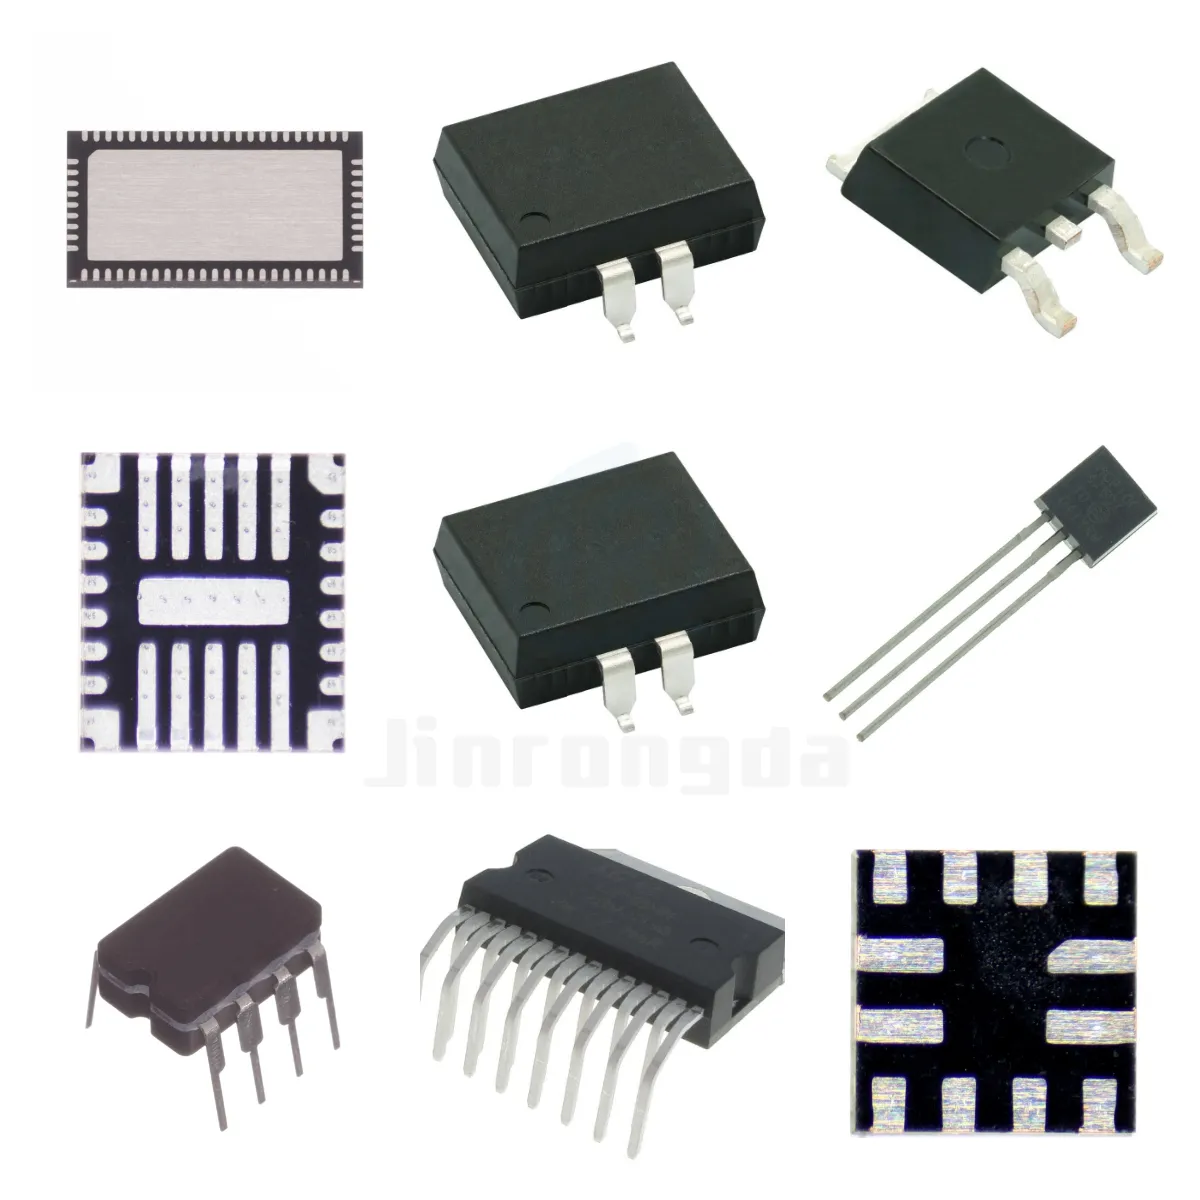 Singolo Chip Microcomputer Serie Completa di Spot di Garanzia Della Qualità Vantaggio di Prezzo